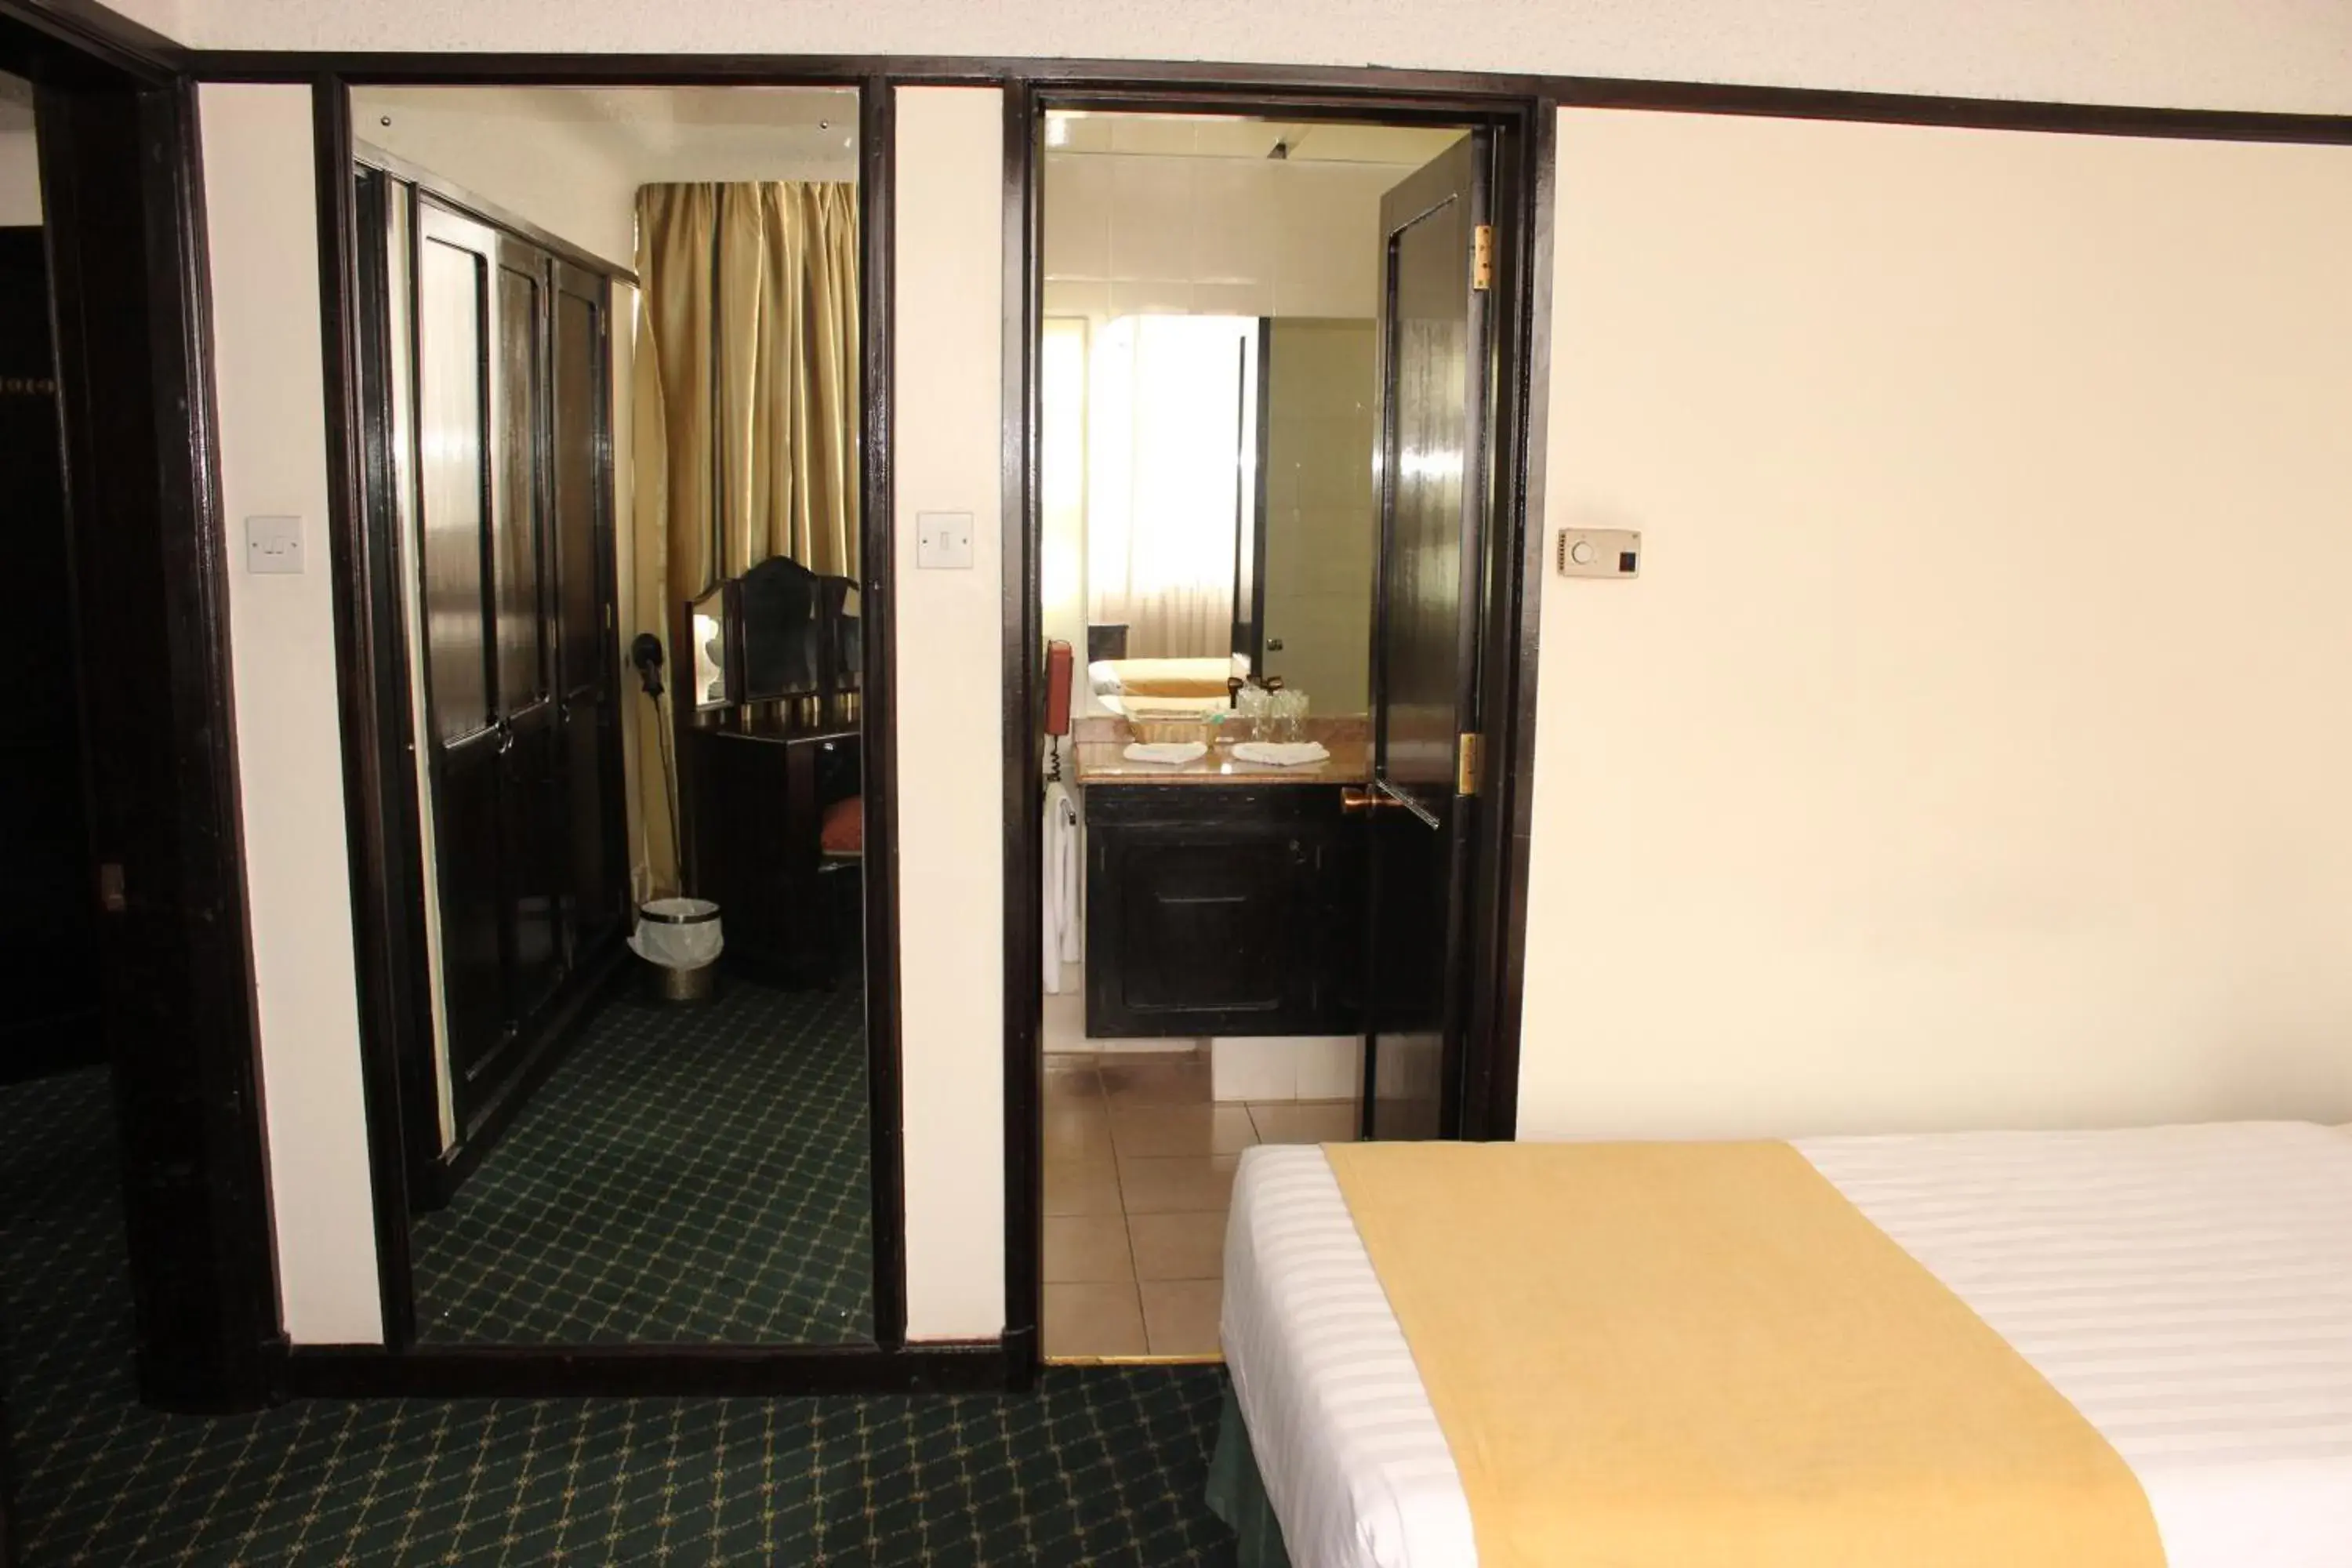 Bedroom, Bathroom in Nairobi Safari Club